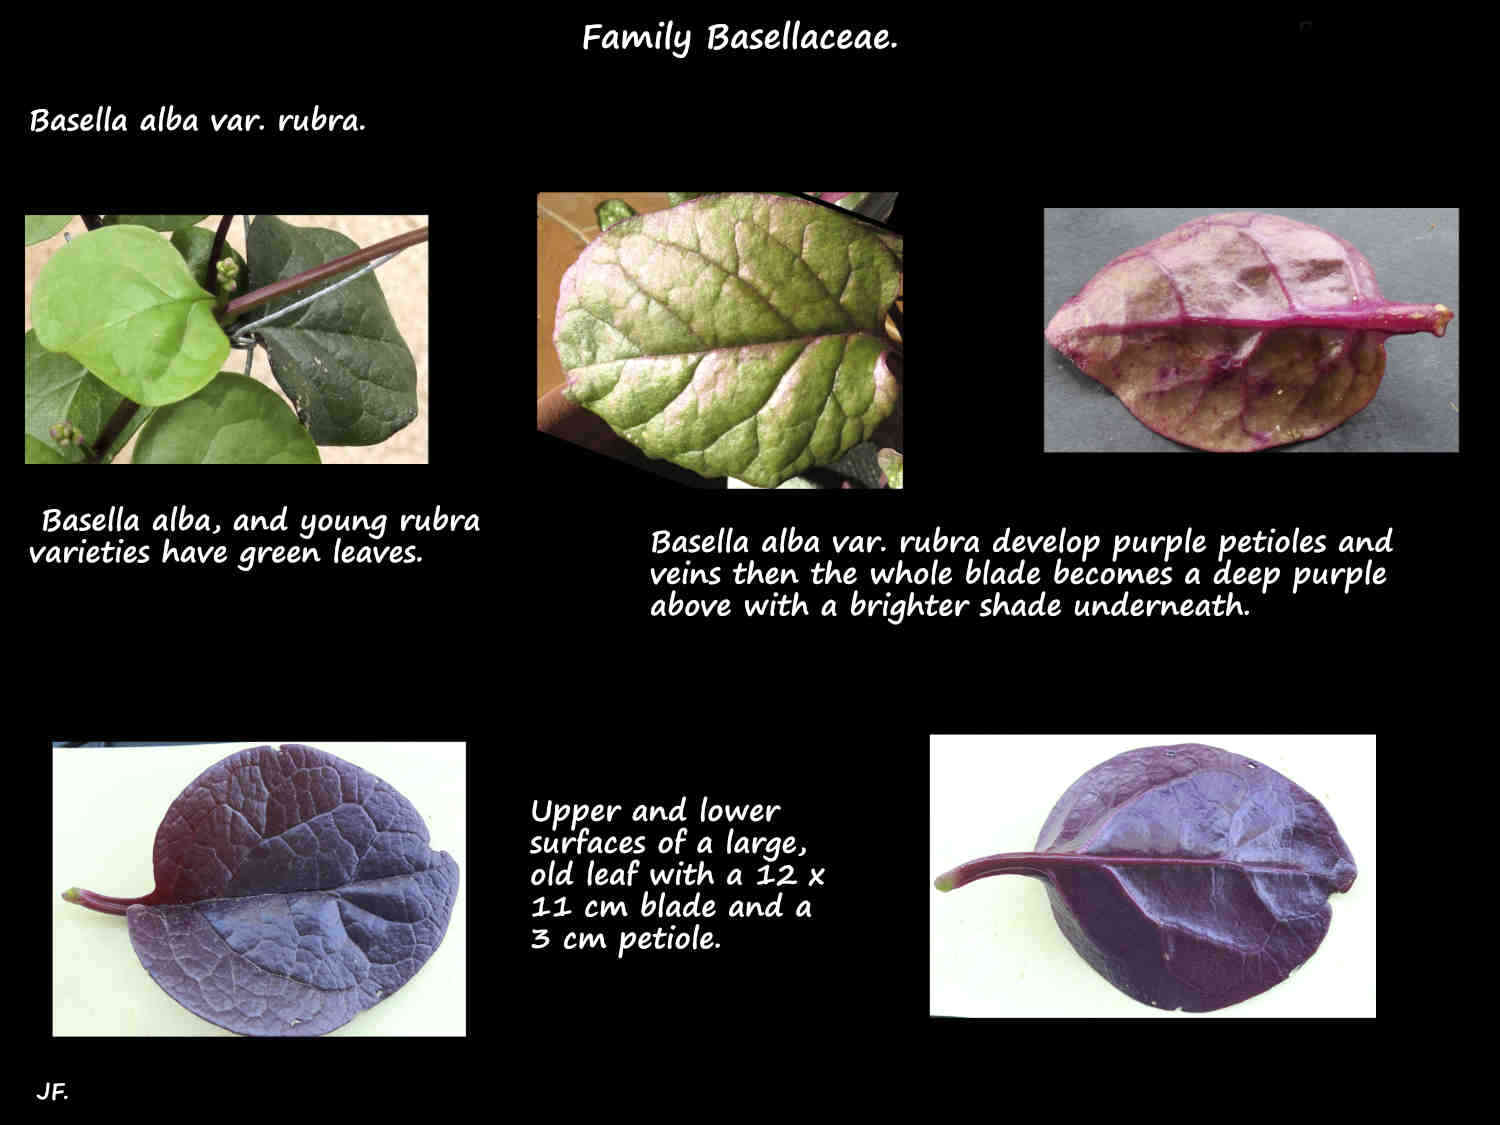 7 Basella alba var. rubra leaf